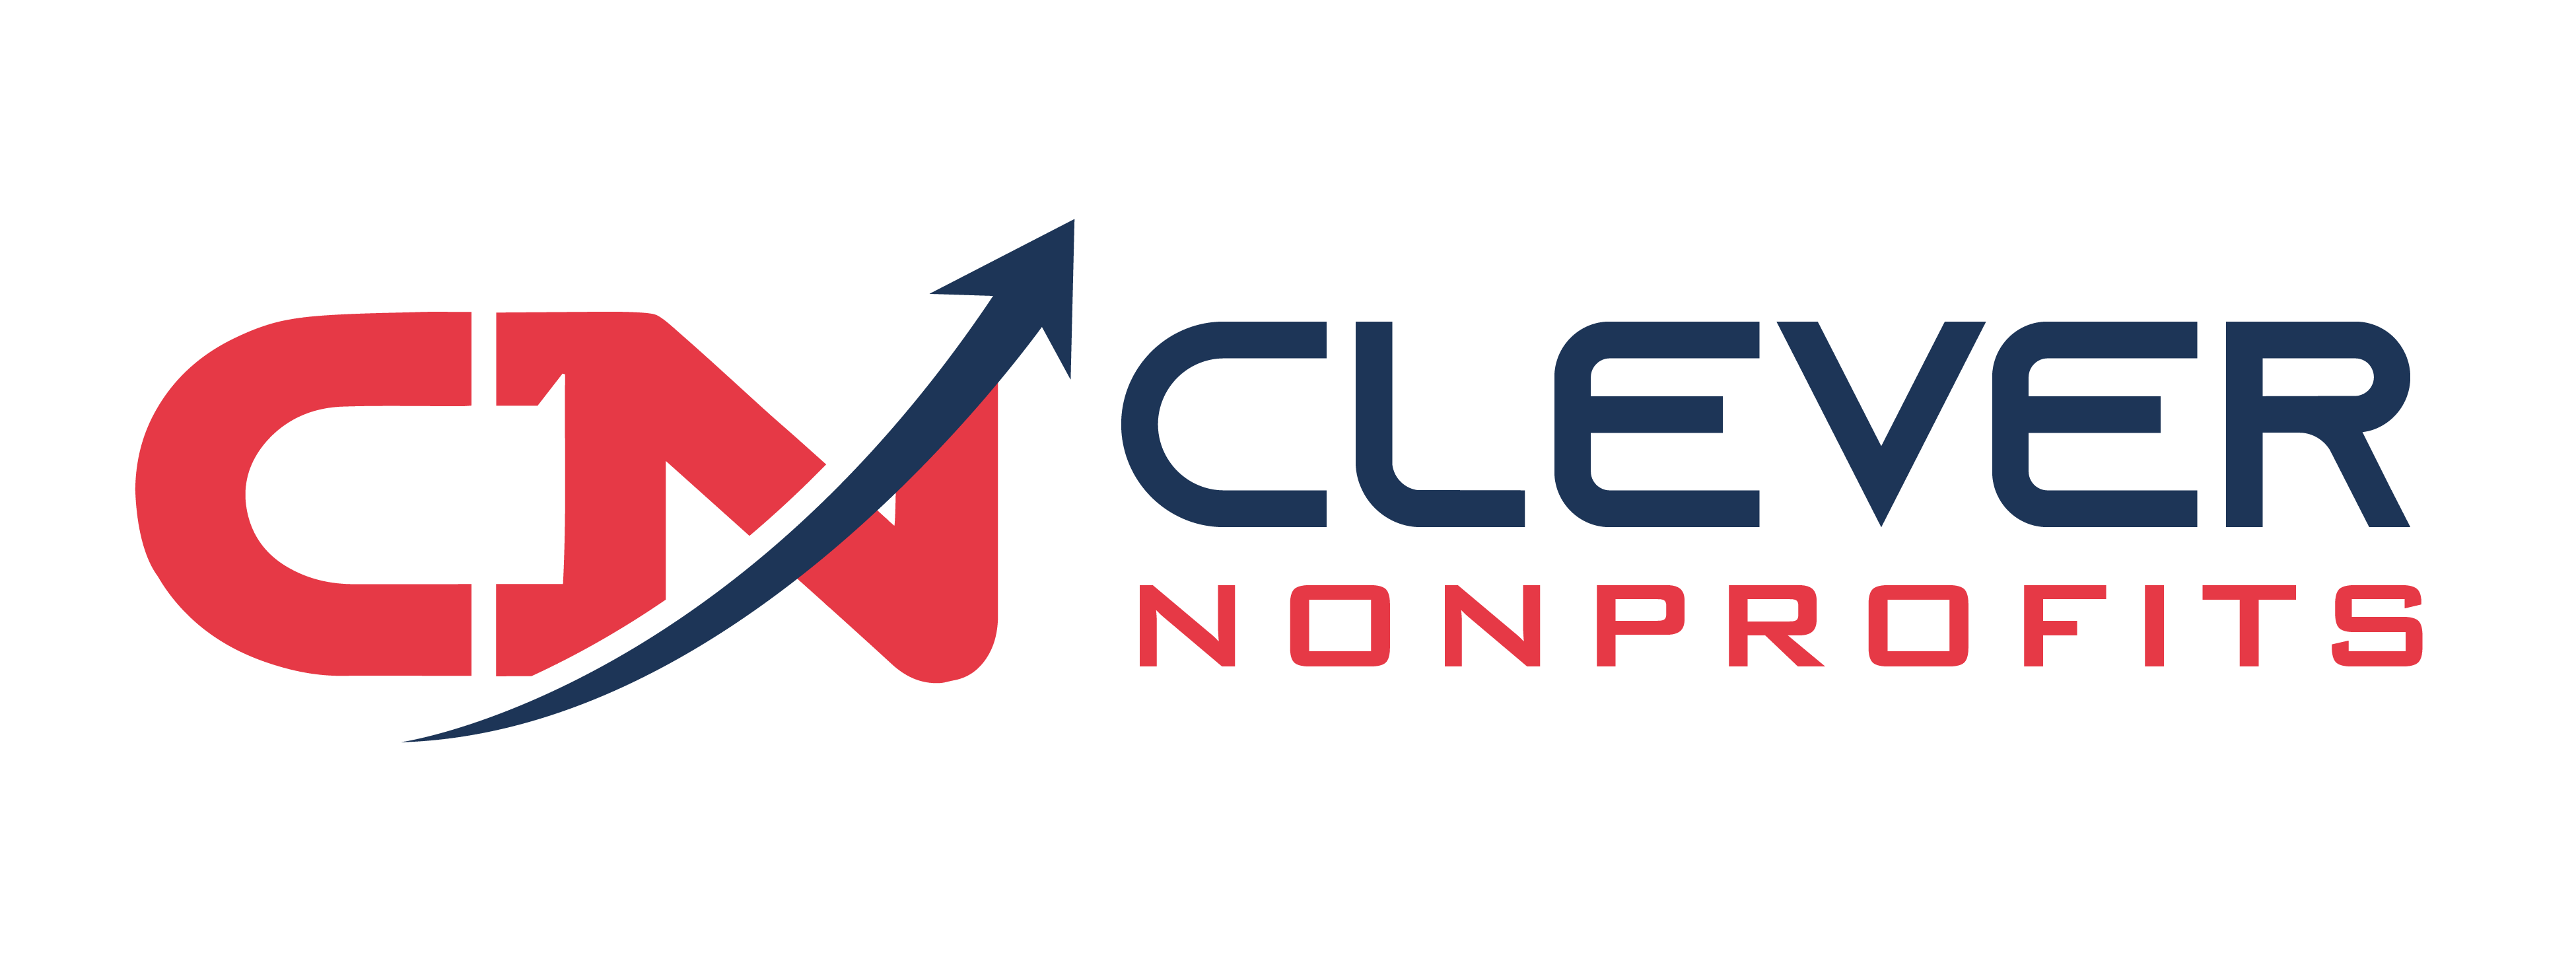 Clever Nonprofits, LLC